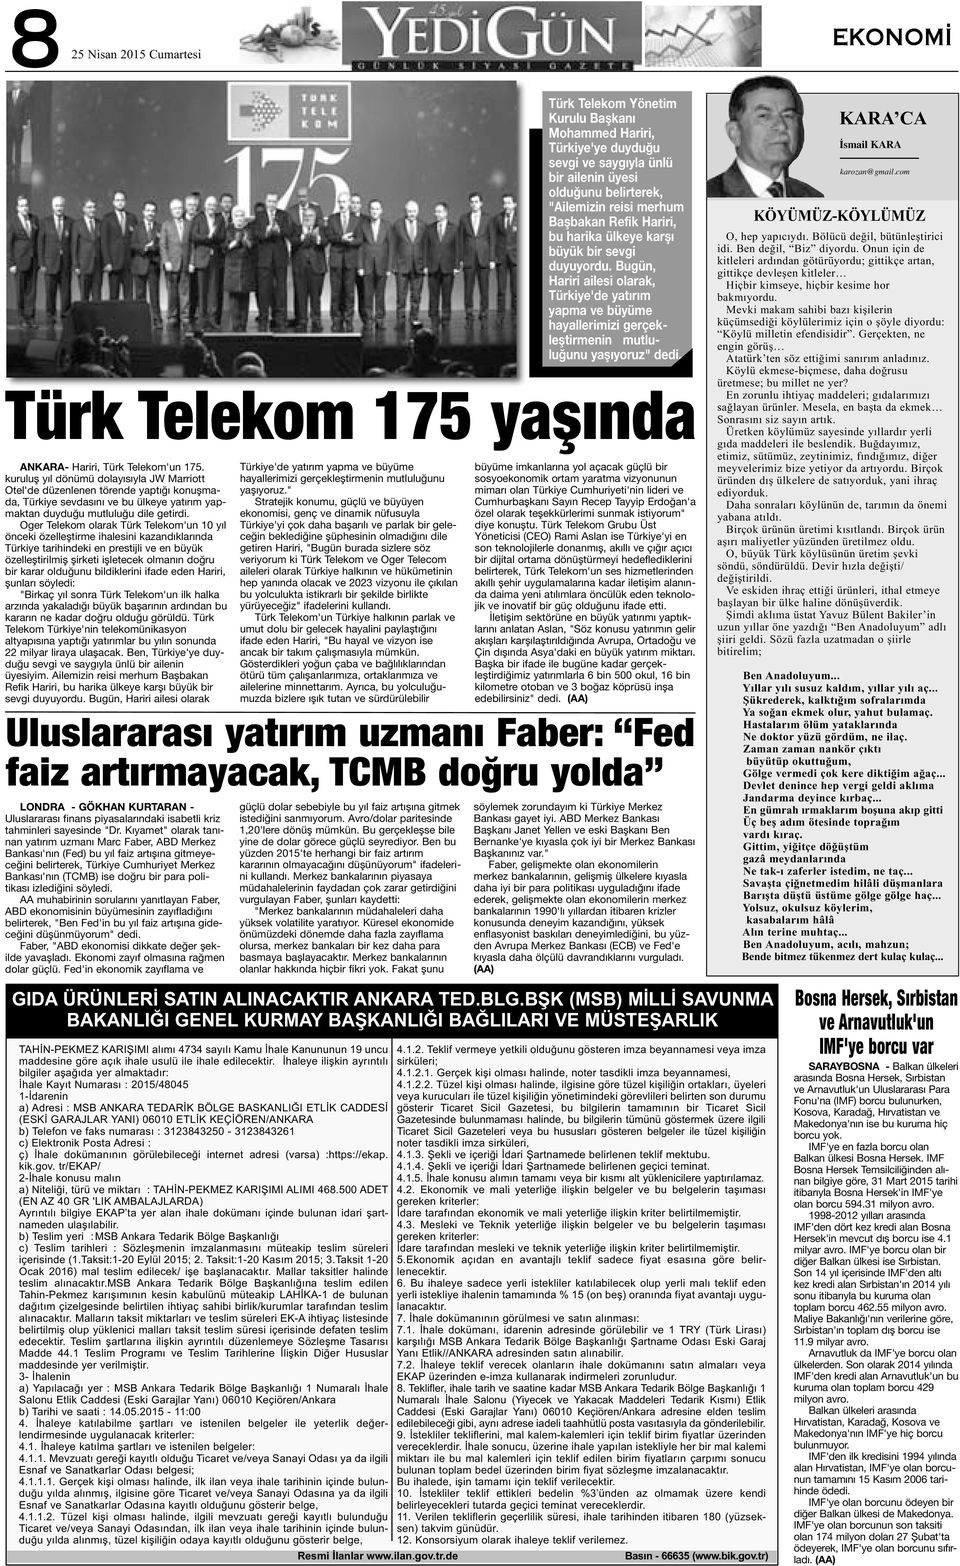 Oger Telekom olarak Türk Telekom'un 10 yıl önceki özelleştirme ihalesini kazandıklarında Türkiye tarihindeki en prestijli ve en büyük özelleştirilmiş şirketi işletecek olmanın doğru bir karar